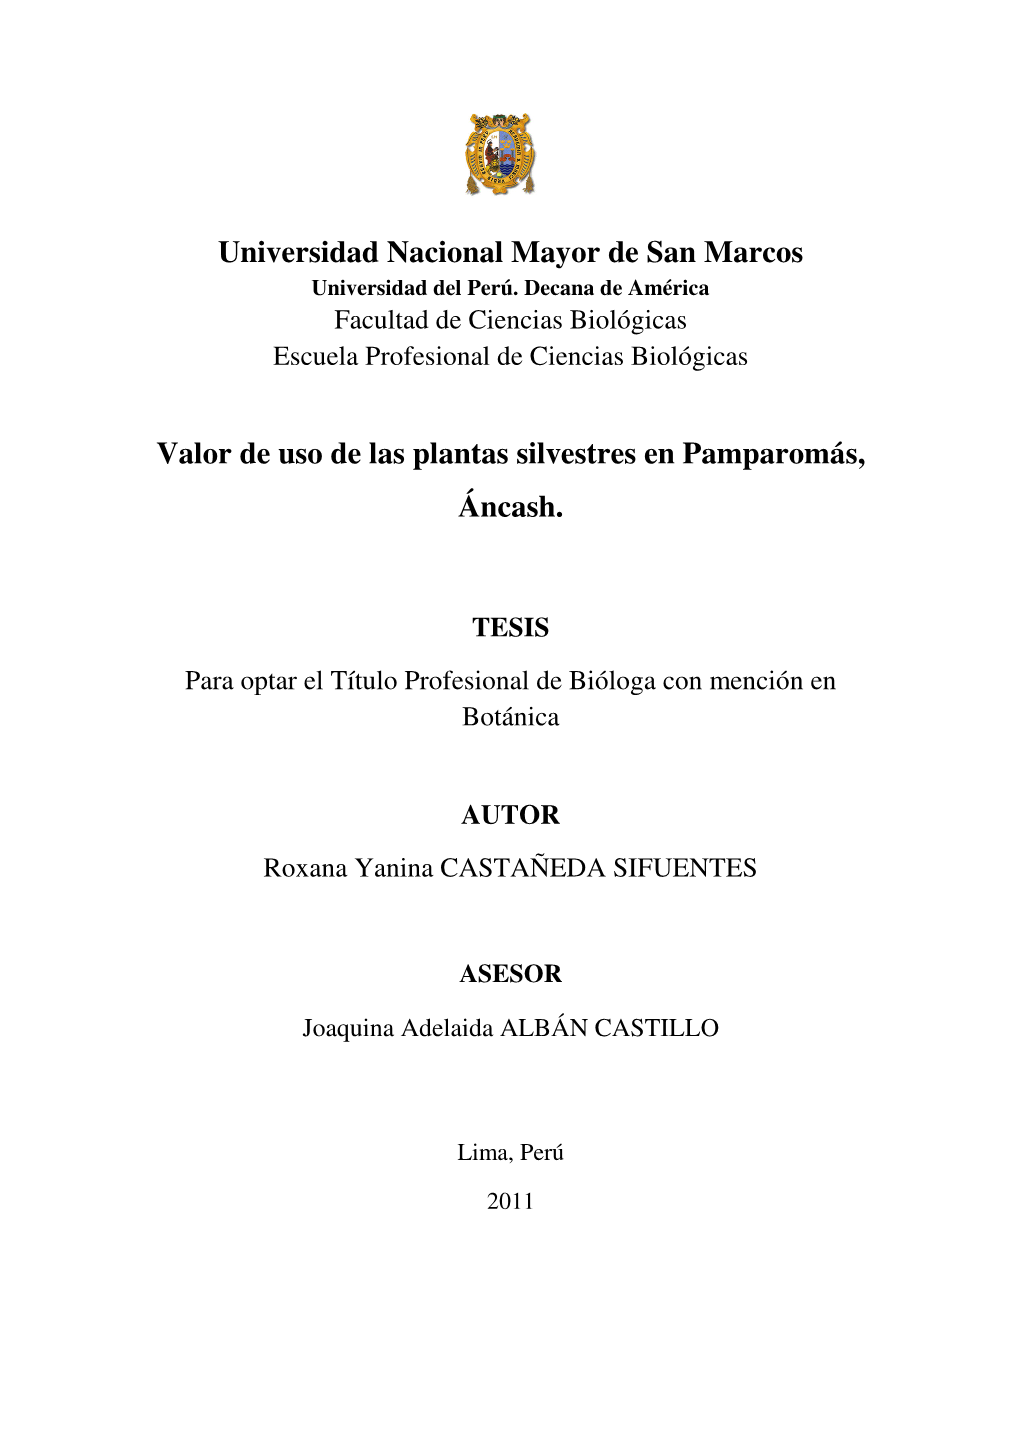 Universidad Nacional Mayor De San Marcos Valor De Uso